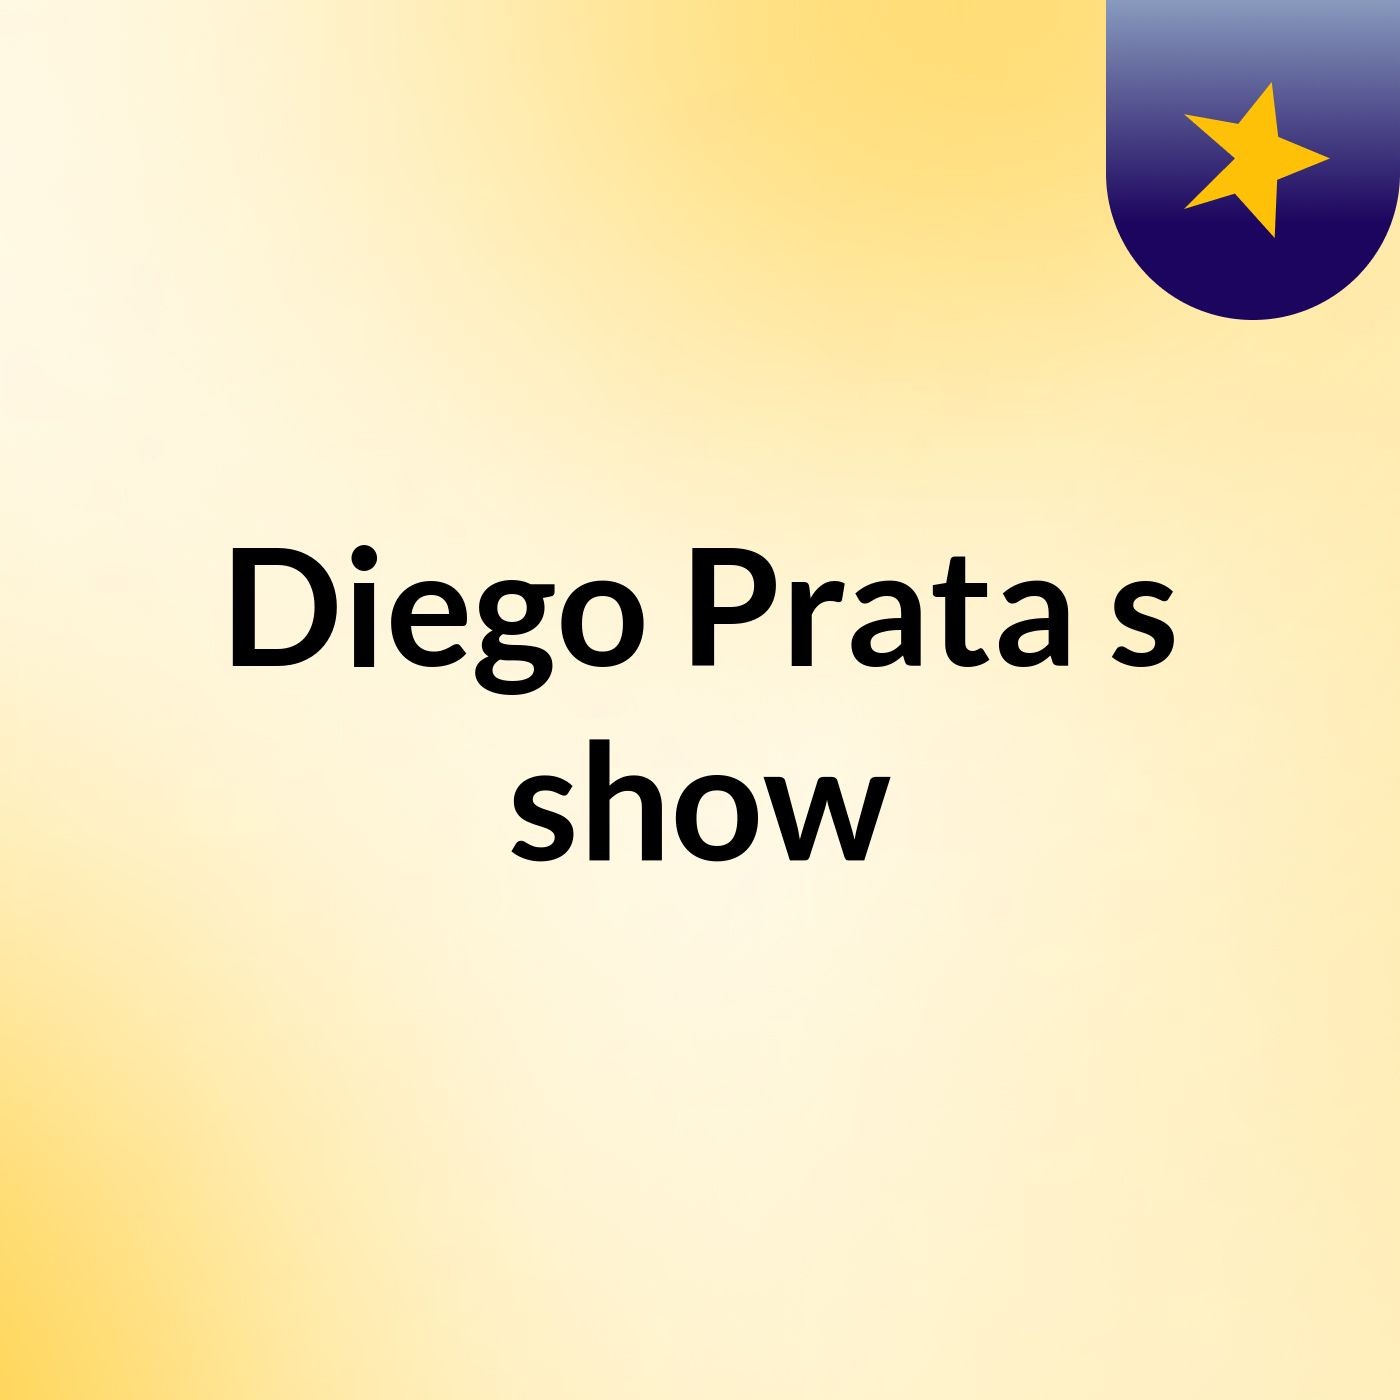 Diego Prata's show